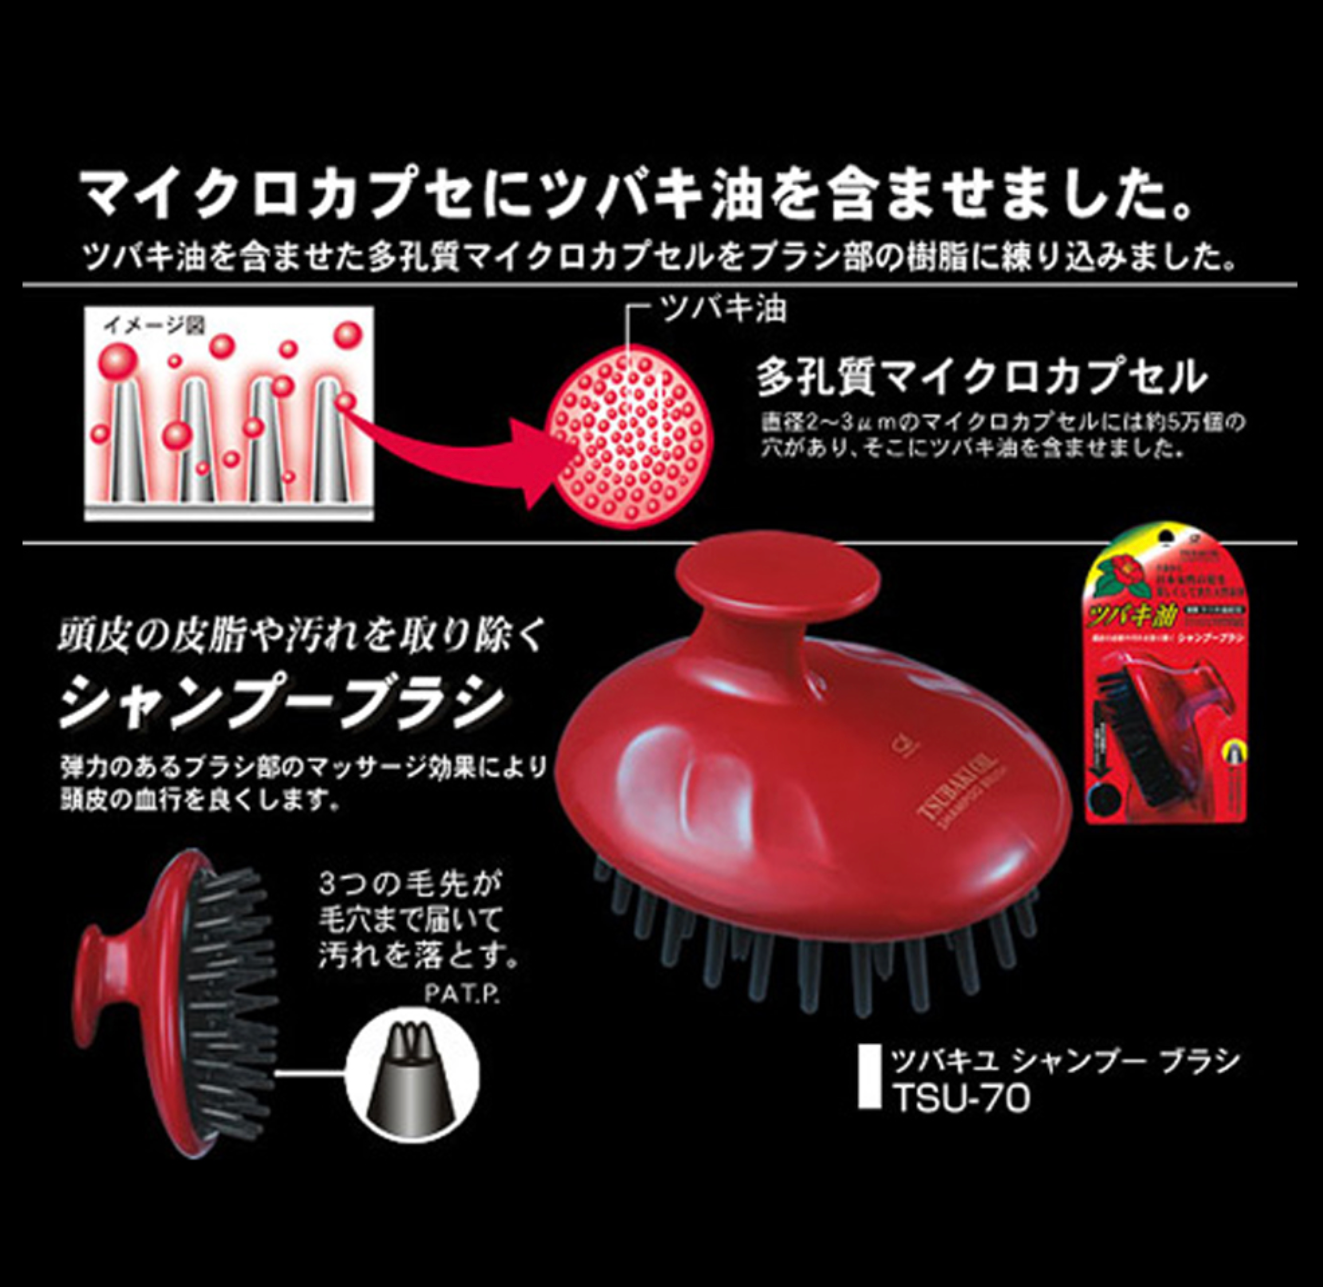 日本山椿油洗髮頭皮按摩梳